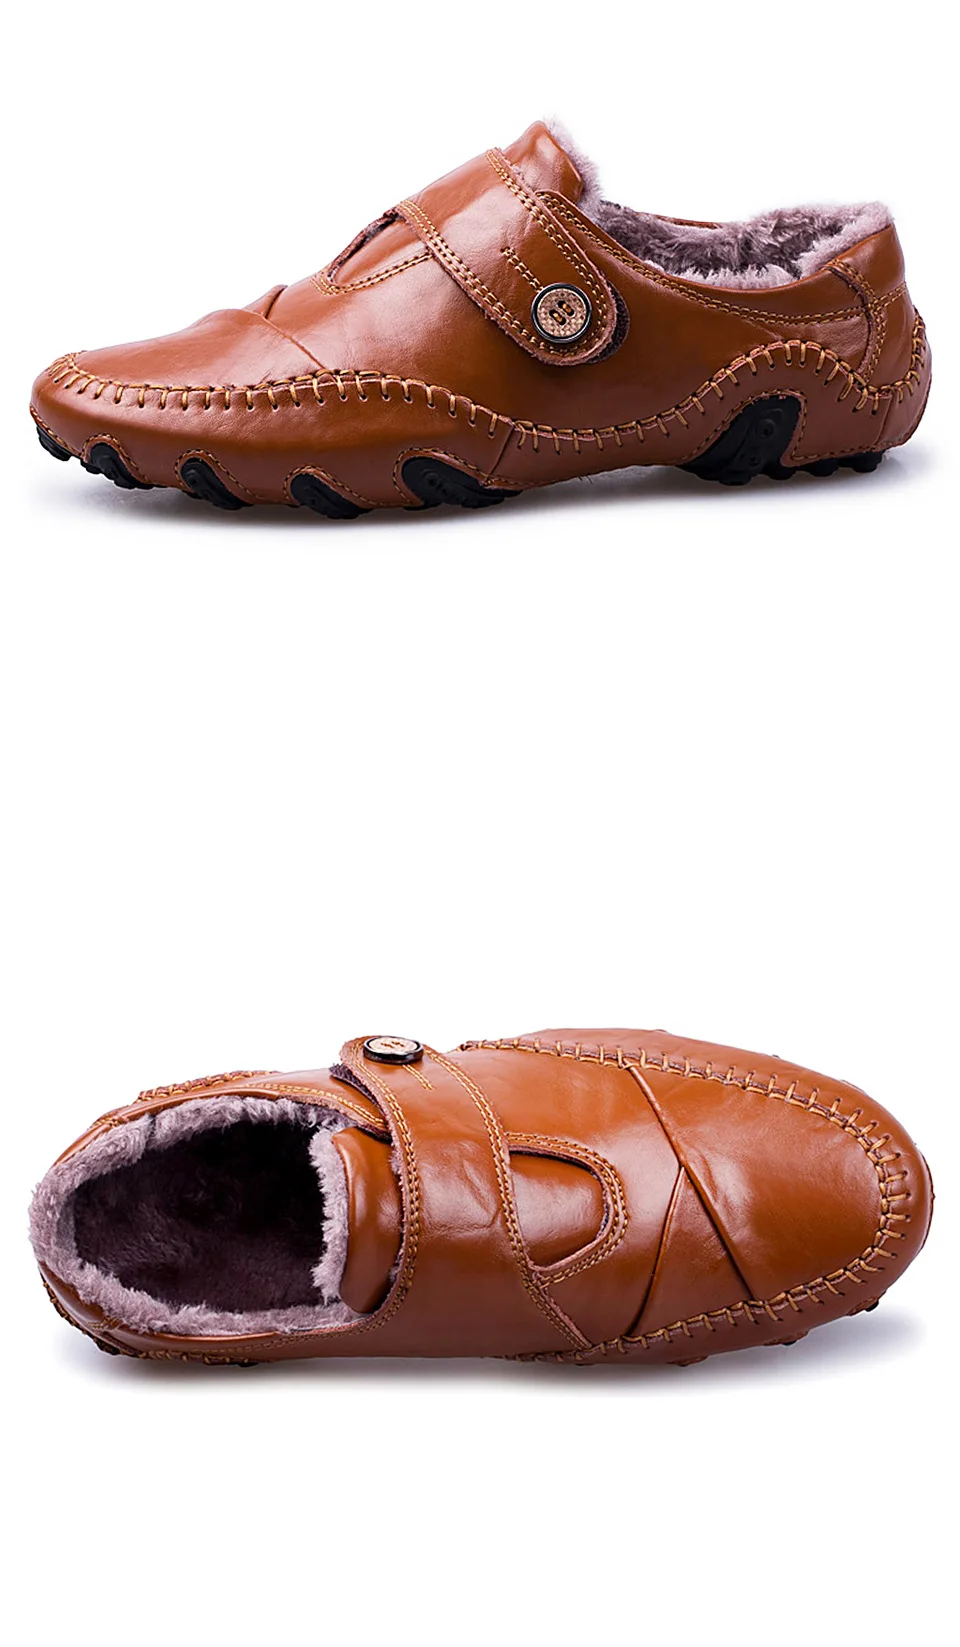 REETENE/новые удобные водонепроницаемые мокасины; лоферы; Мужская обувь; кожаная обувь; Мужская Повседневная зимняя обувь; мужские уличные кроссовки; мужская обувь